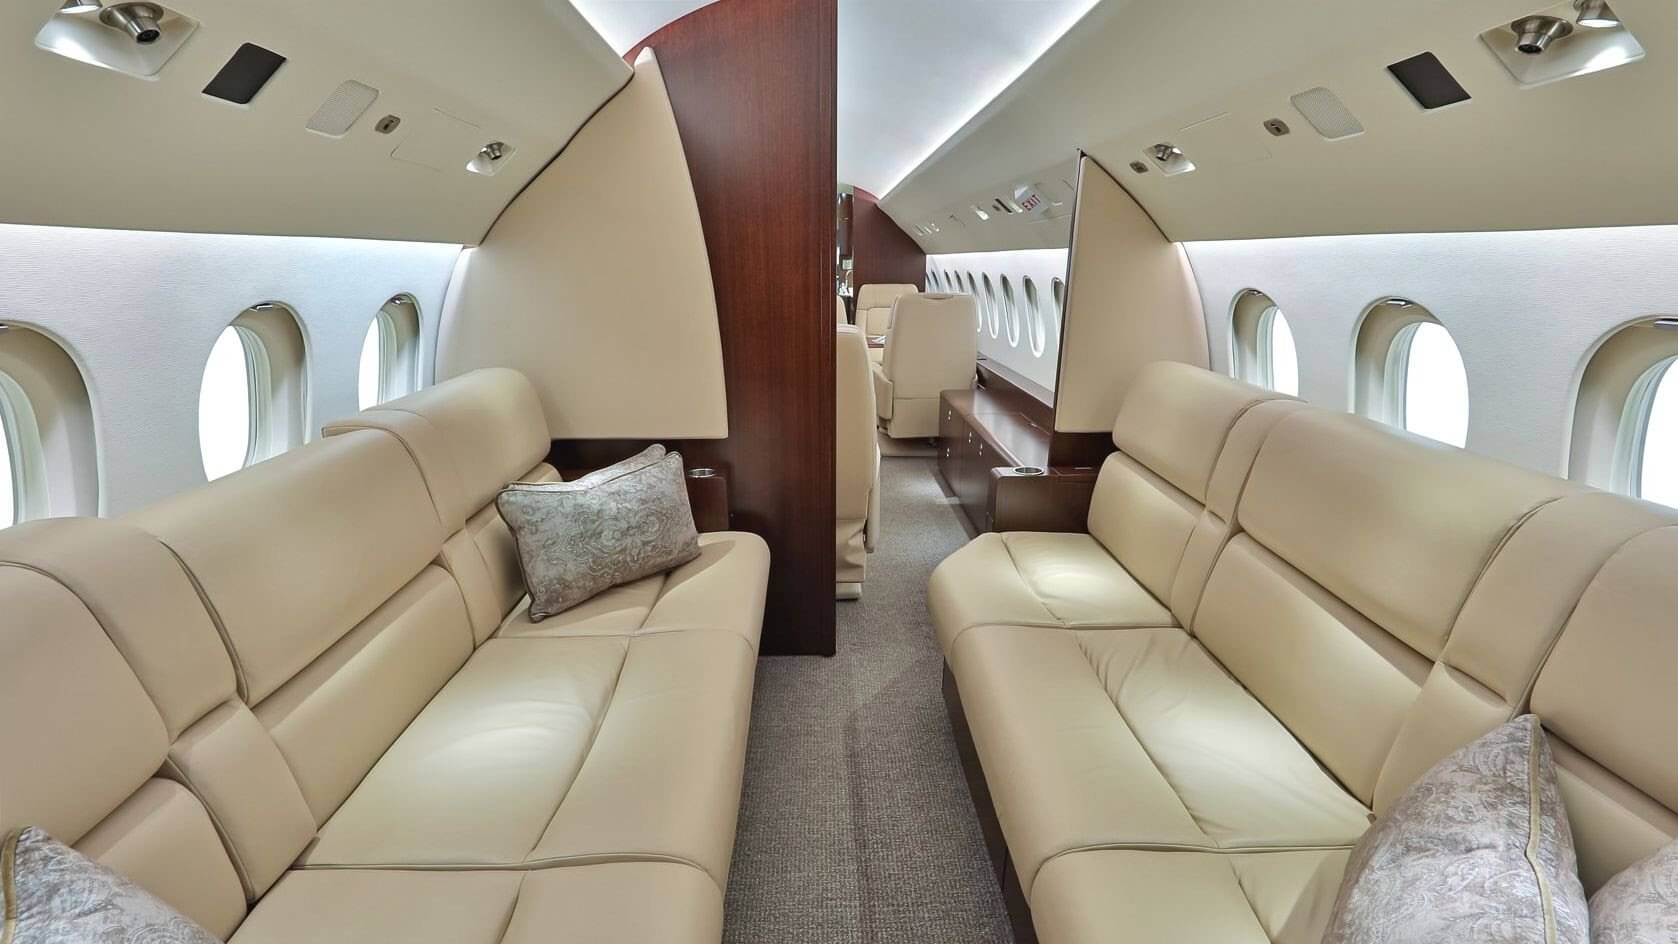 2010 FALCON 900LX - Heavy Jet - Wonders of Luxury